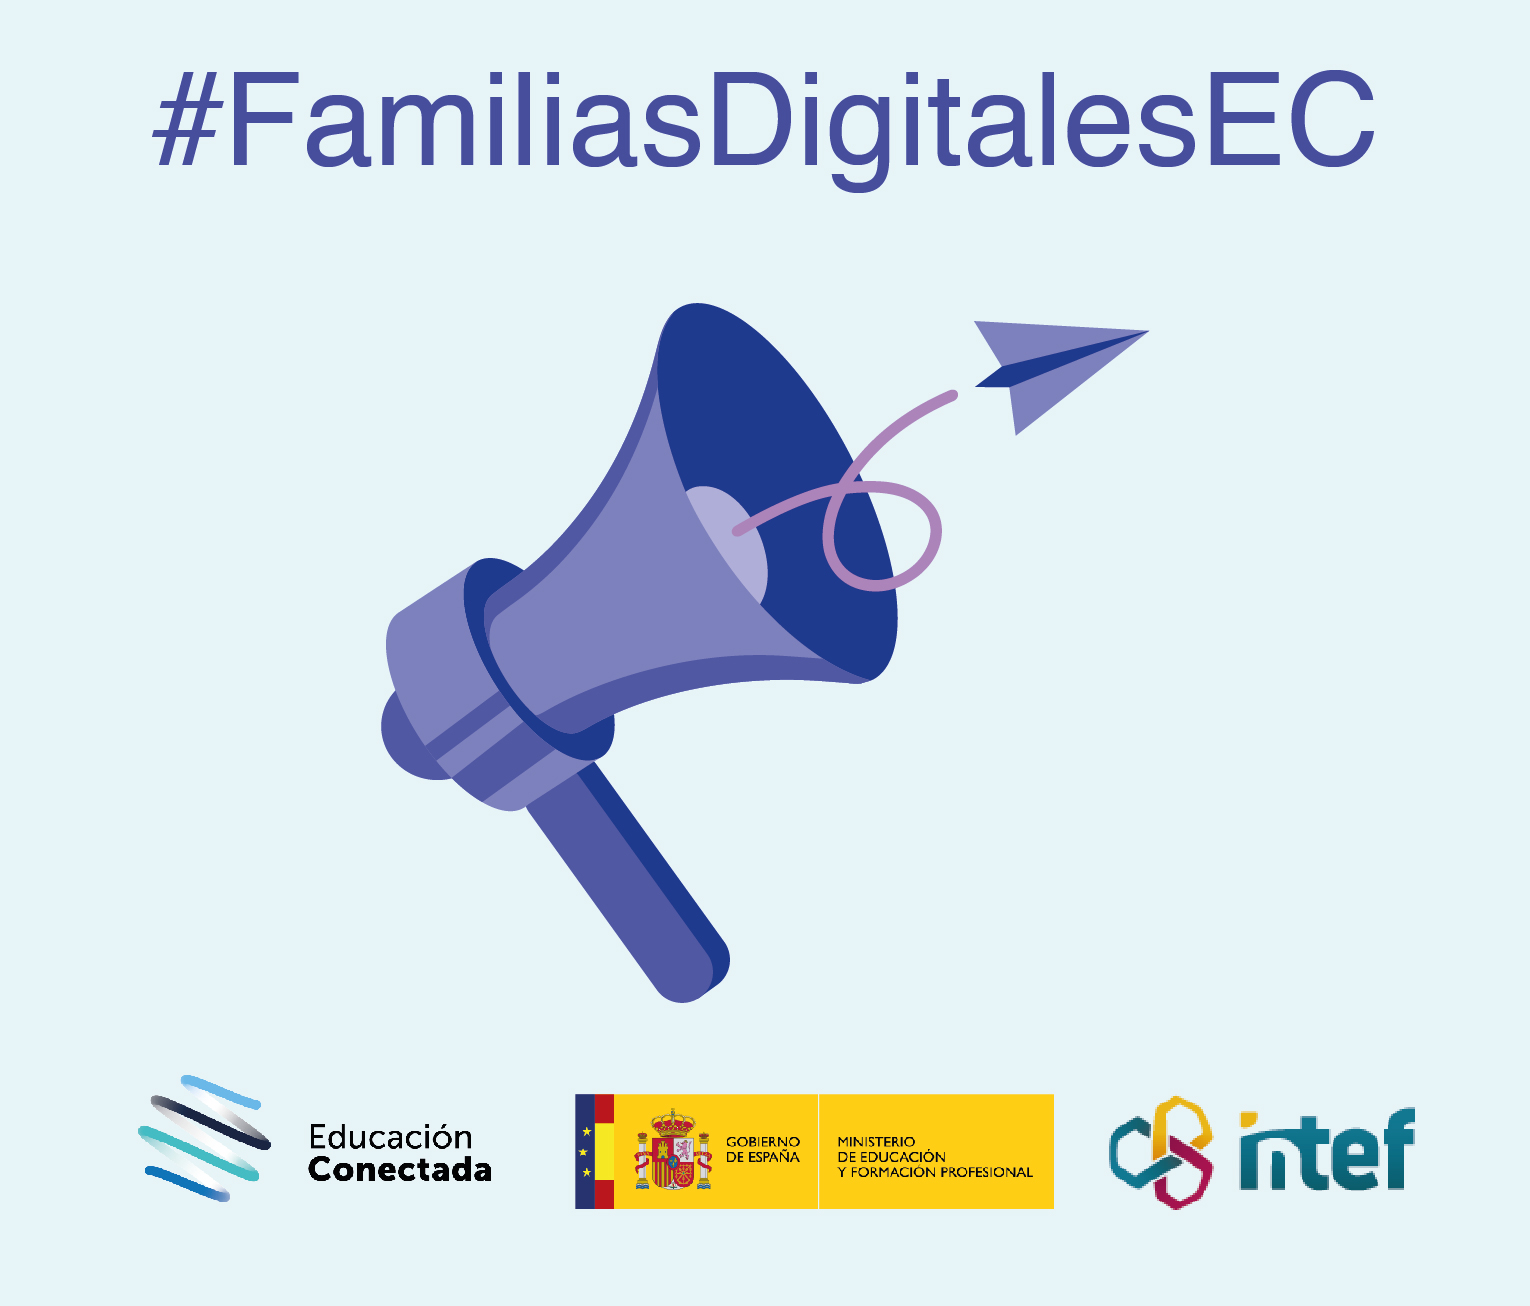 Familias digitales: Interactúa, colabora y comparte en la red (nivel básico) FamiliasDig7